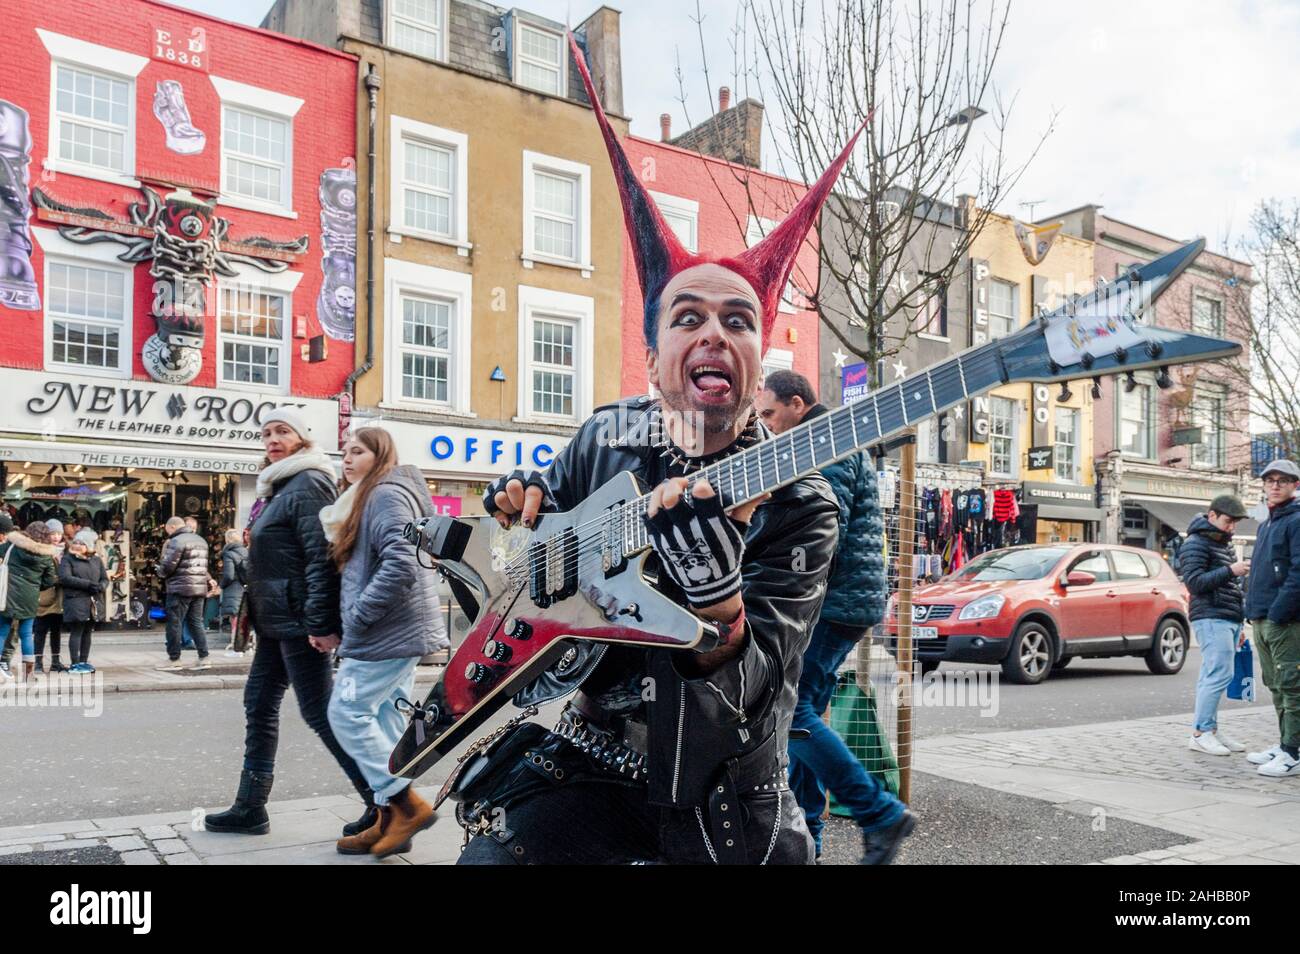 Homme vêtu de vêtements Punk Rocker avec des cheveux à pointes et une pose de guitare pour des images touristiques sur Camden High Street, Camden, Londres, Royaume-Uni. Banque D'Images